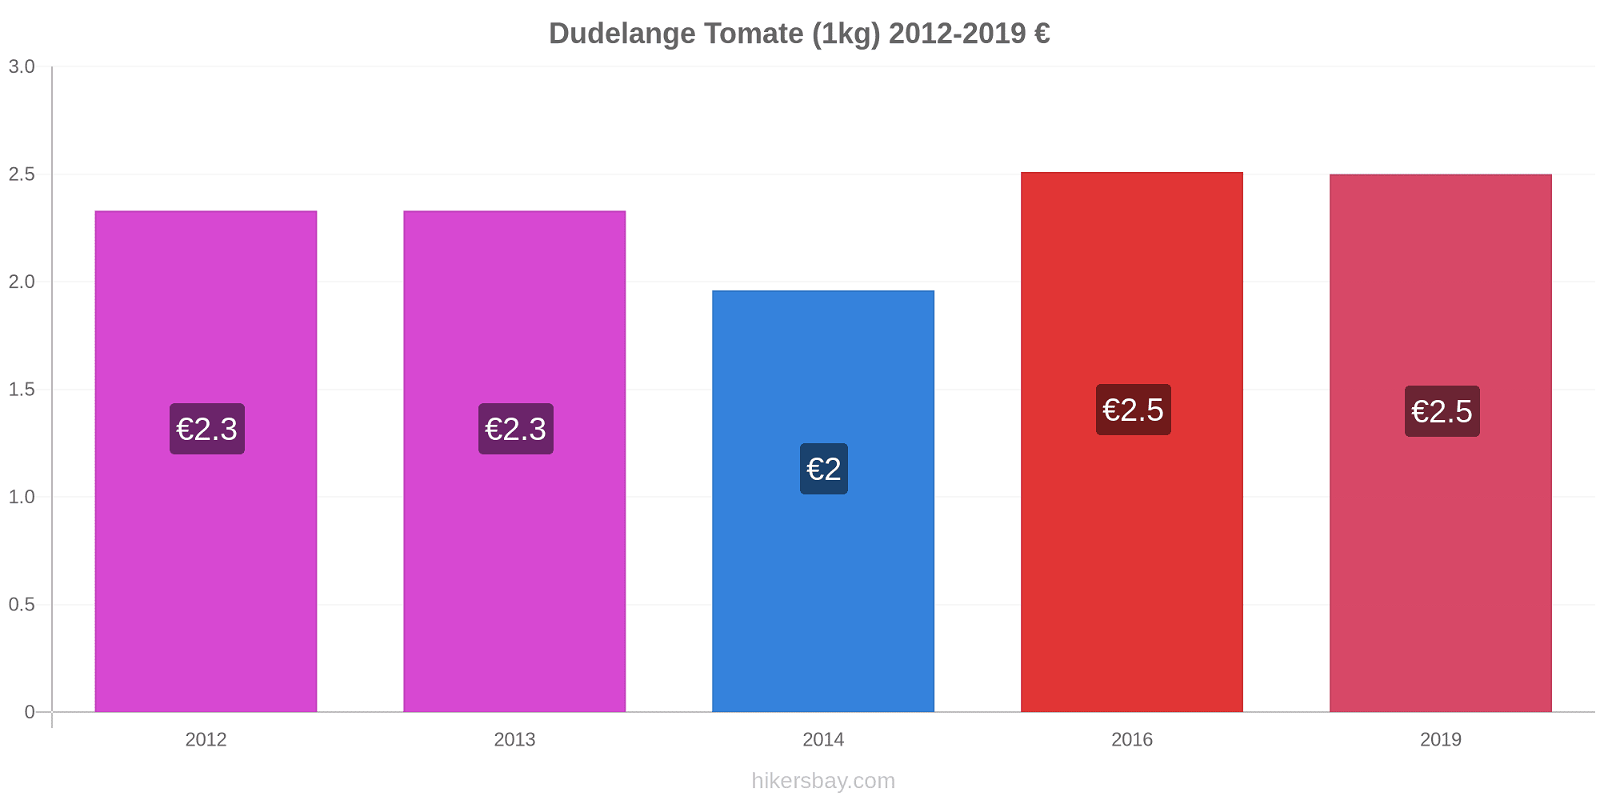 Dudelange cambios de precios Tomate (1kg) hikersbay.com